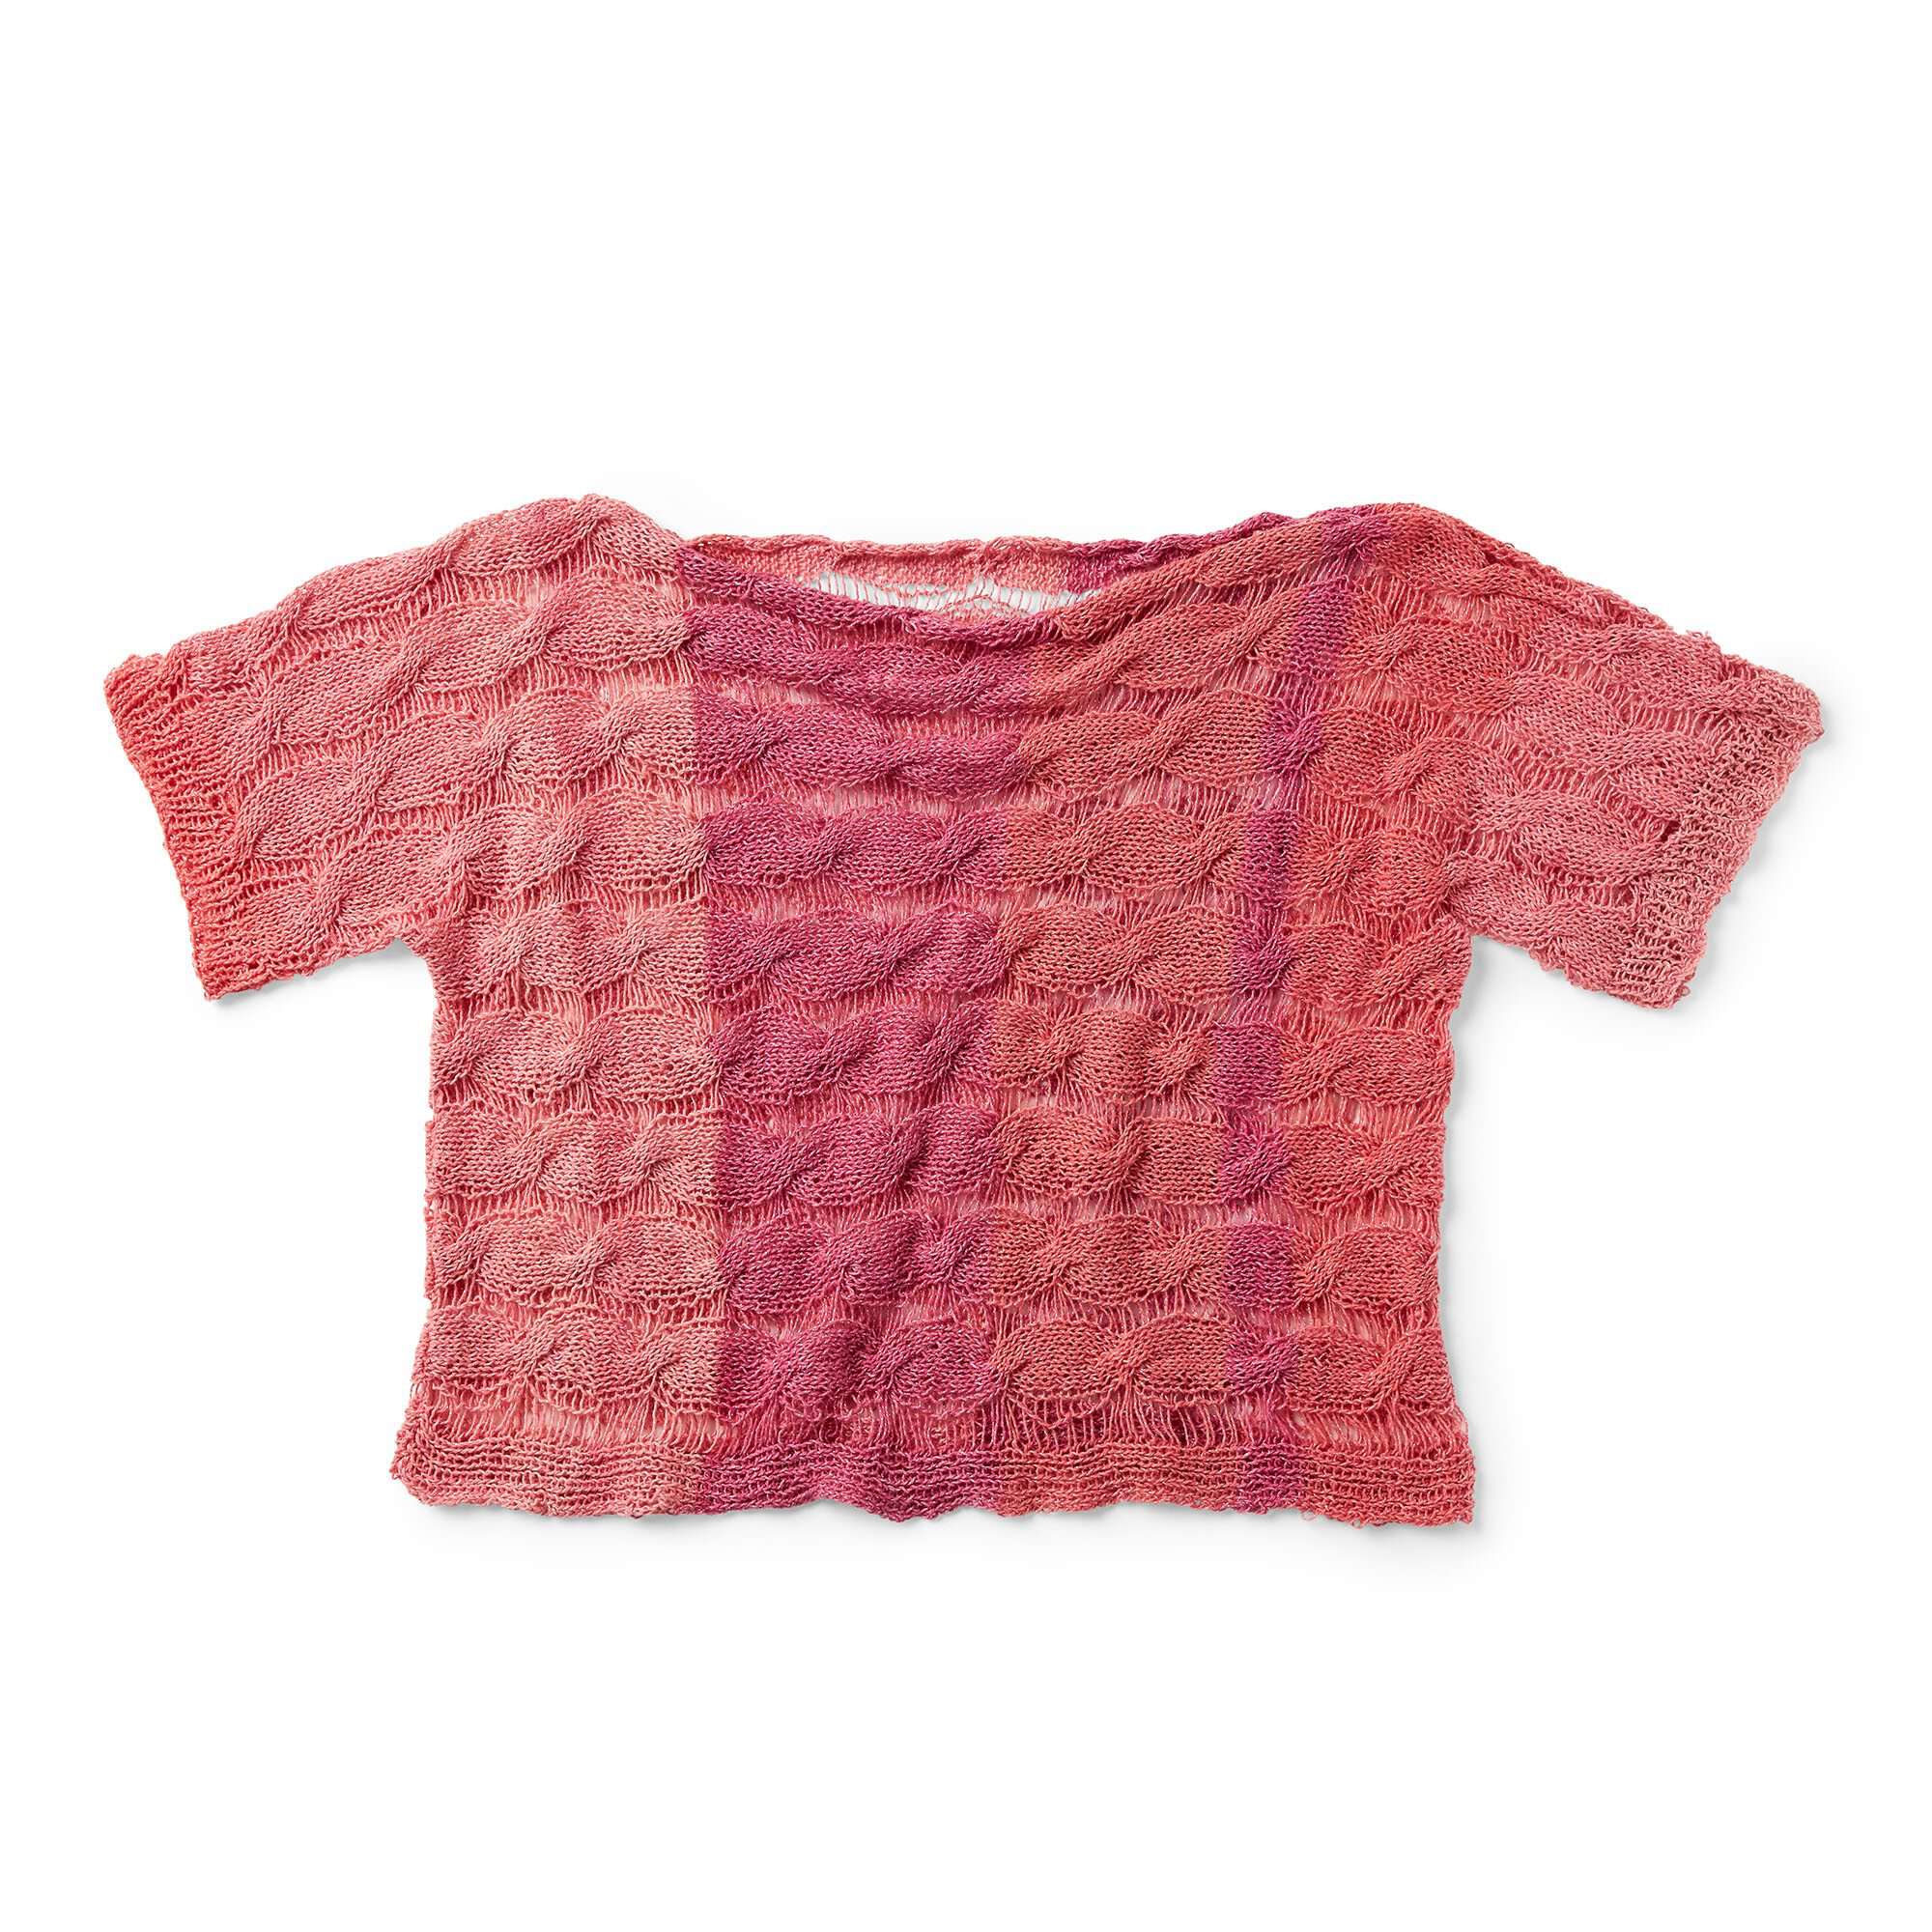 Easy Breezy Yarn Bright red – weareknitters